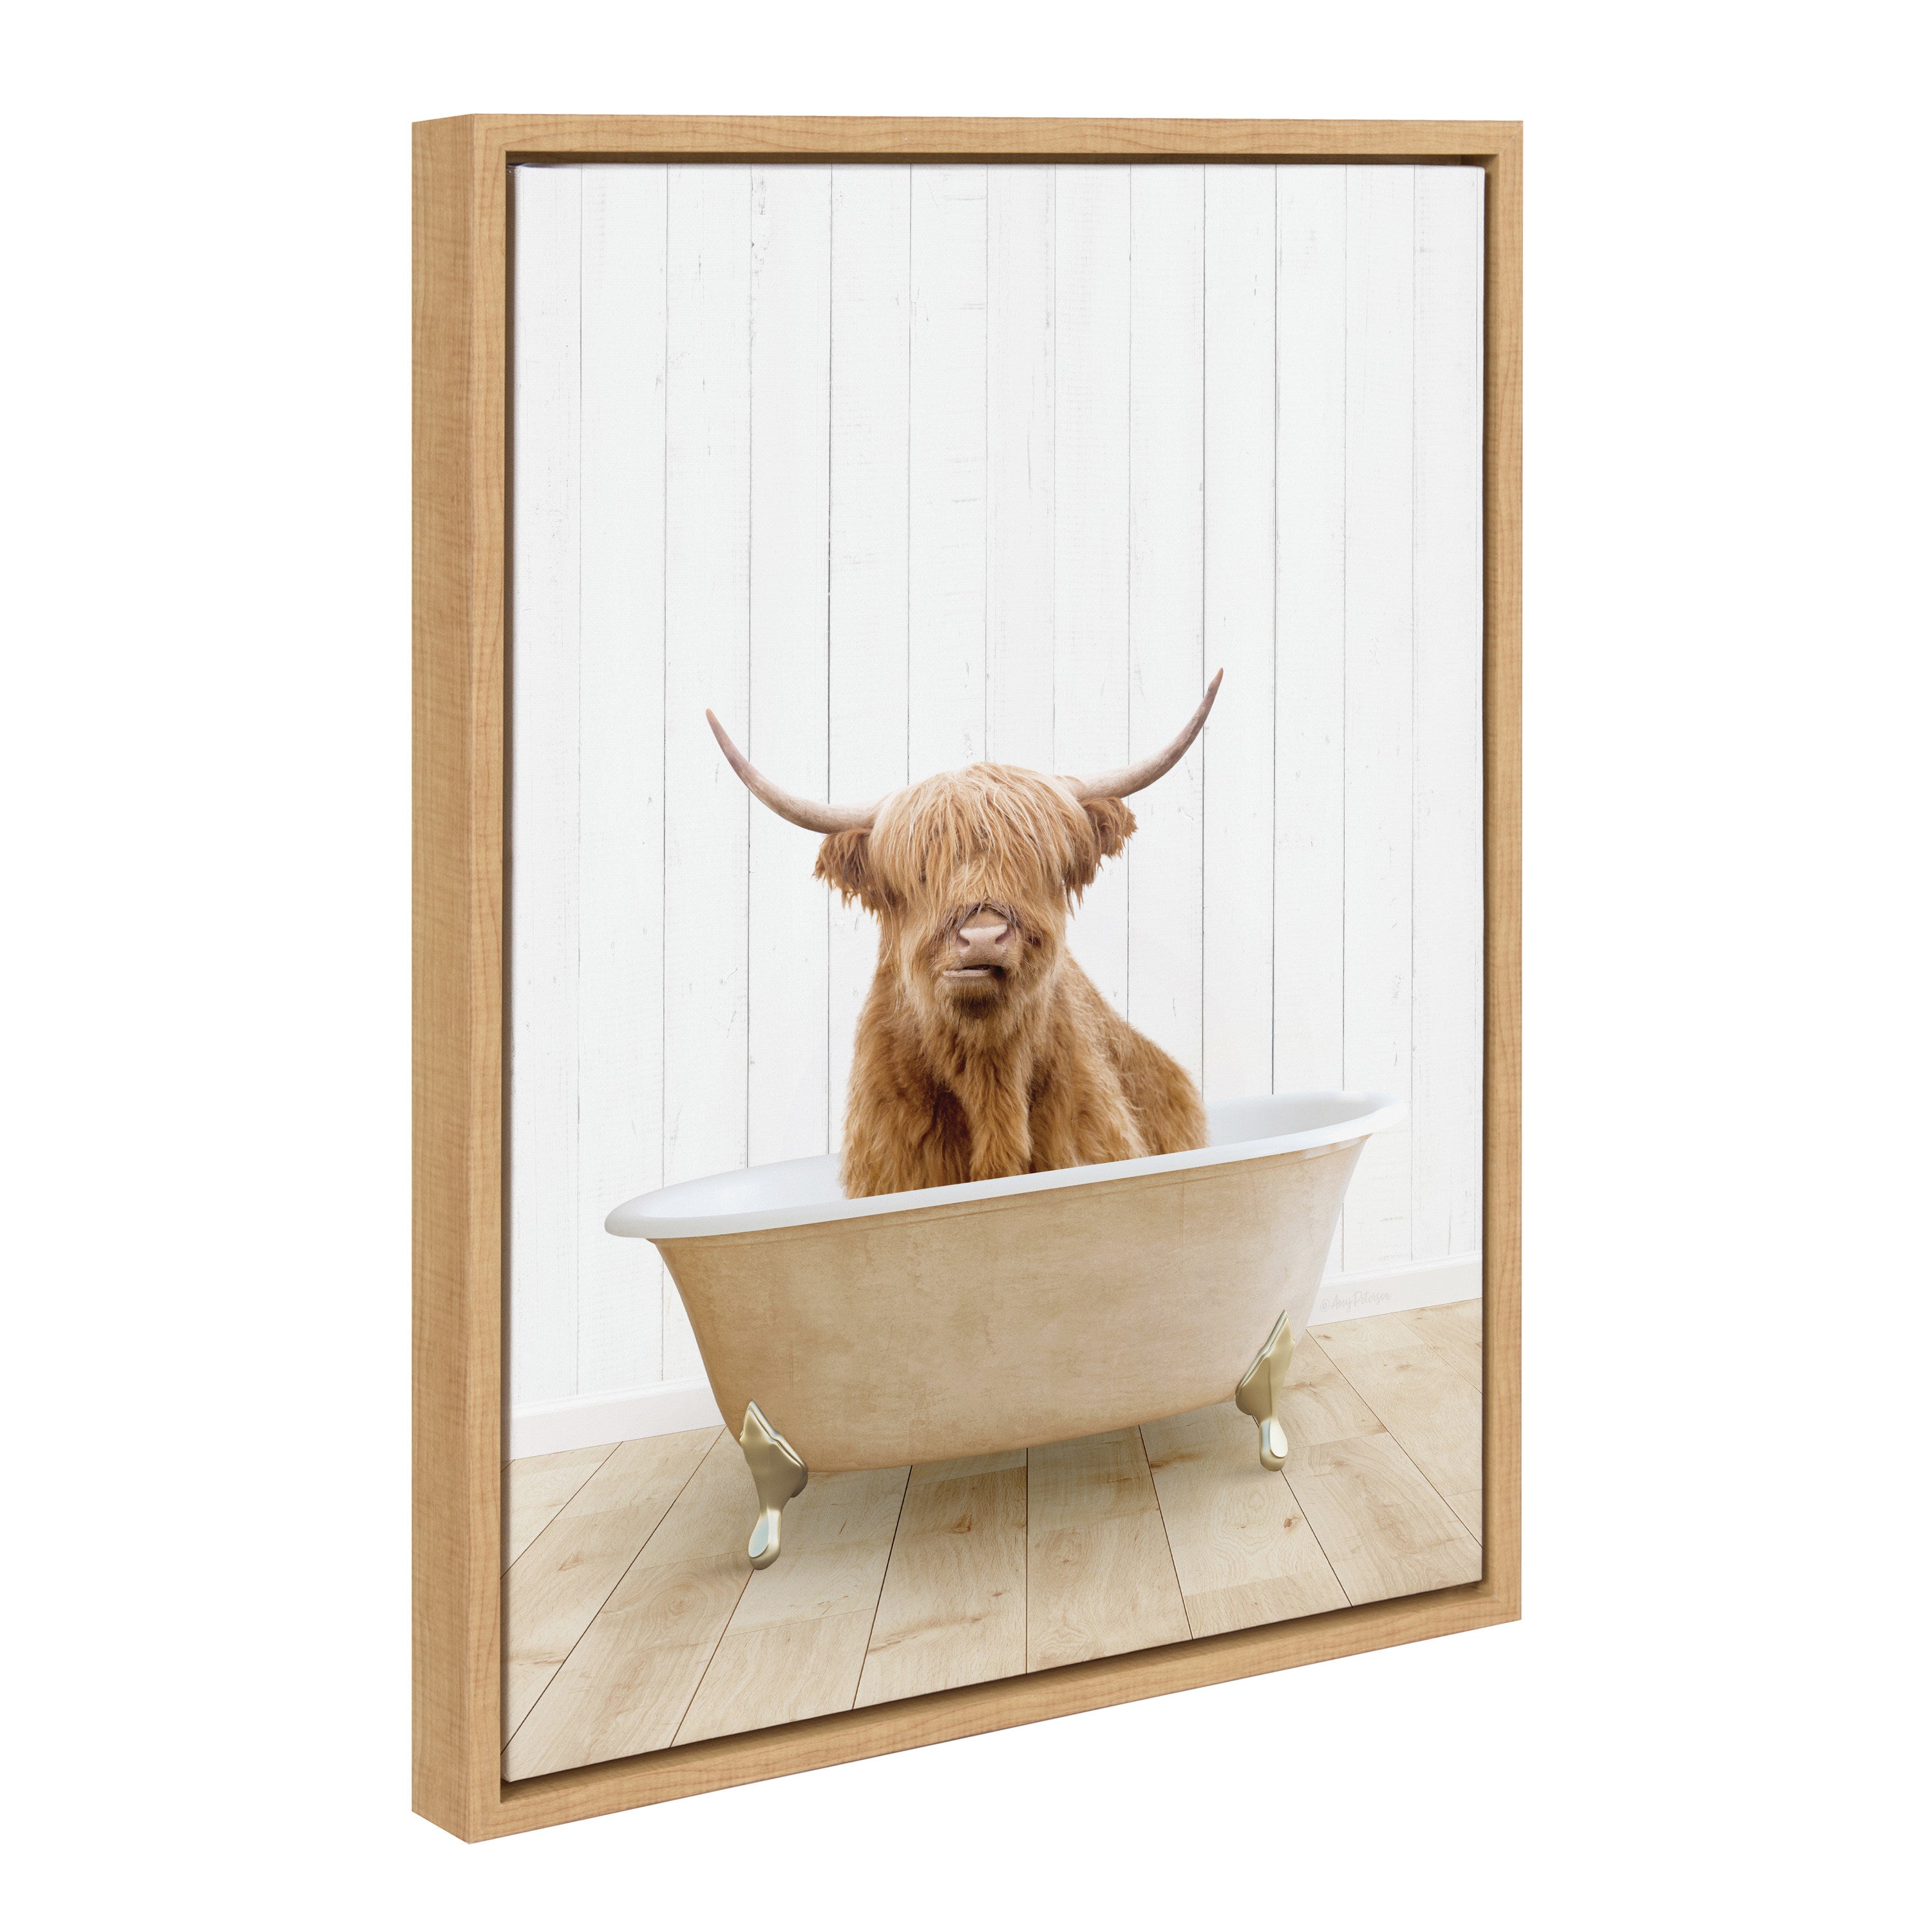 Sylvie Highland Cow Farmhouse Bath Framed Canvas by Amy Peterson Art Studio